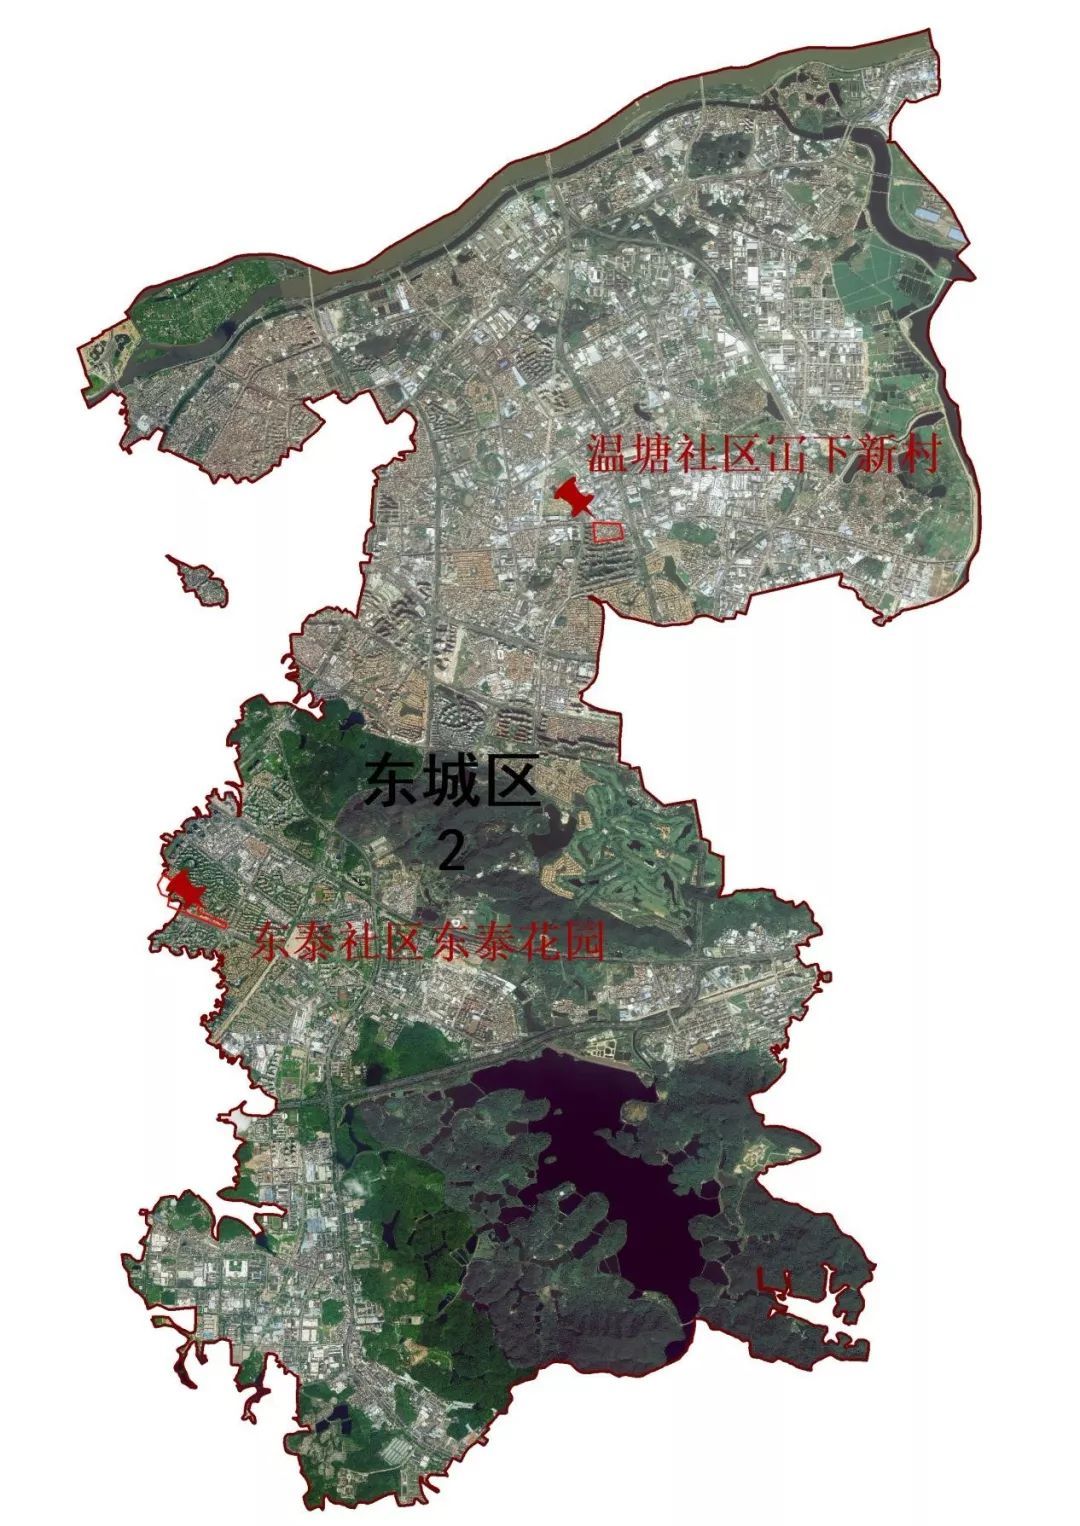 东莞厚街疫情分布图图片